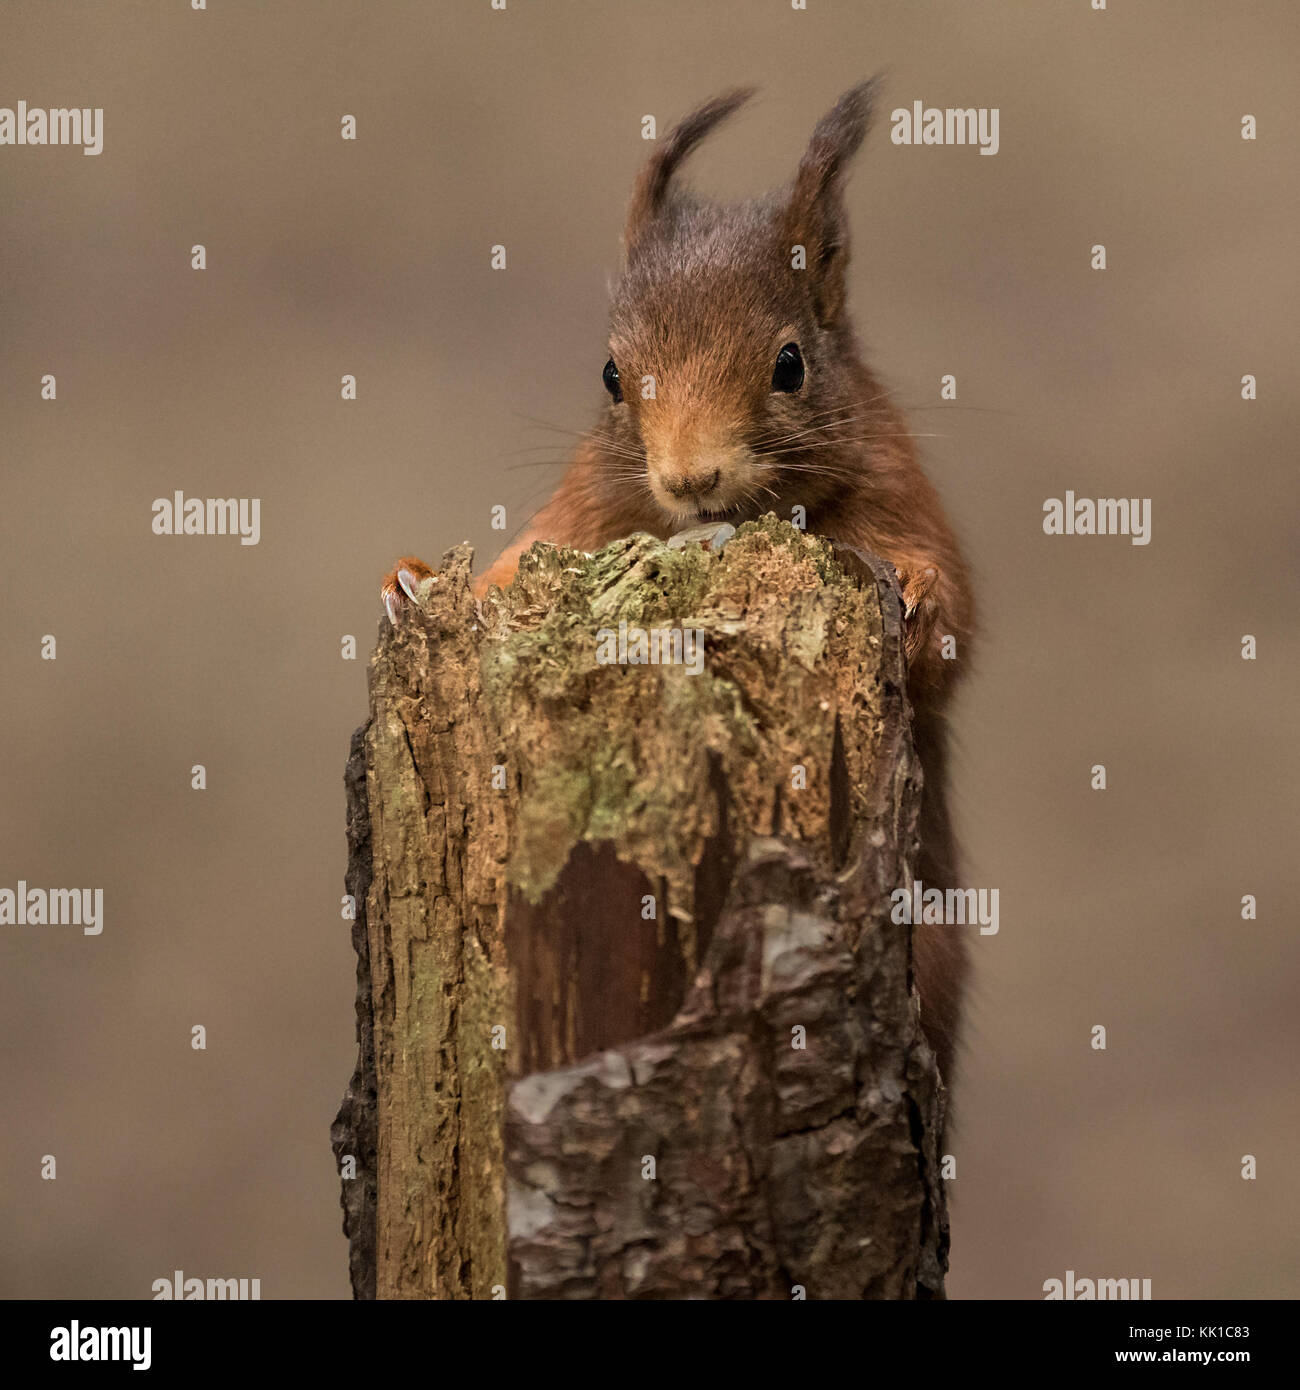 Red scoiattolo (Sciurus vulgaris) foresta in Formby, Southport, Merseyside, Regno Unito Foto Stock